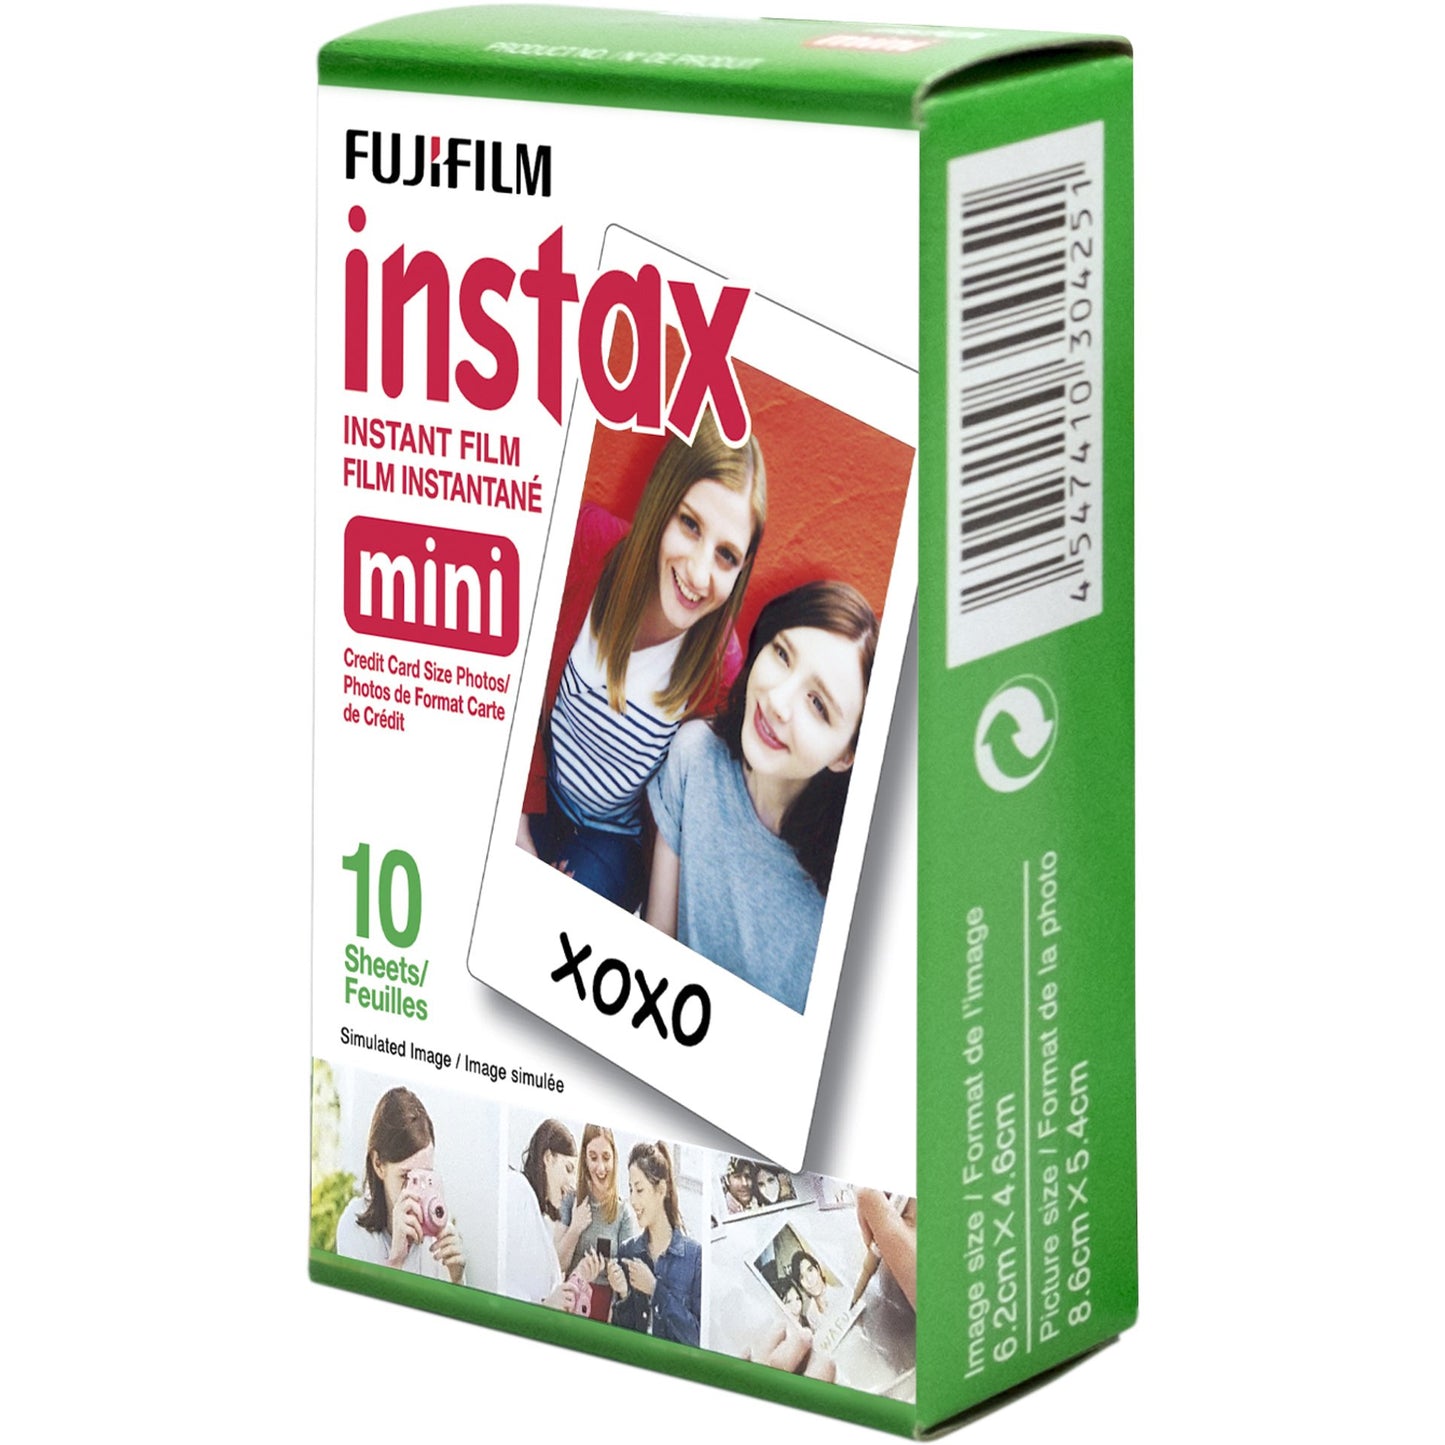 Fujifilm Instax Mini Instant Film - 10 sheets